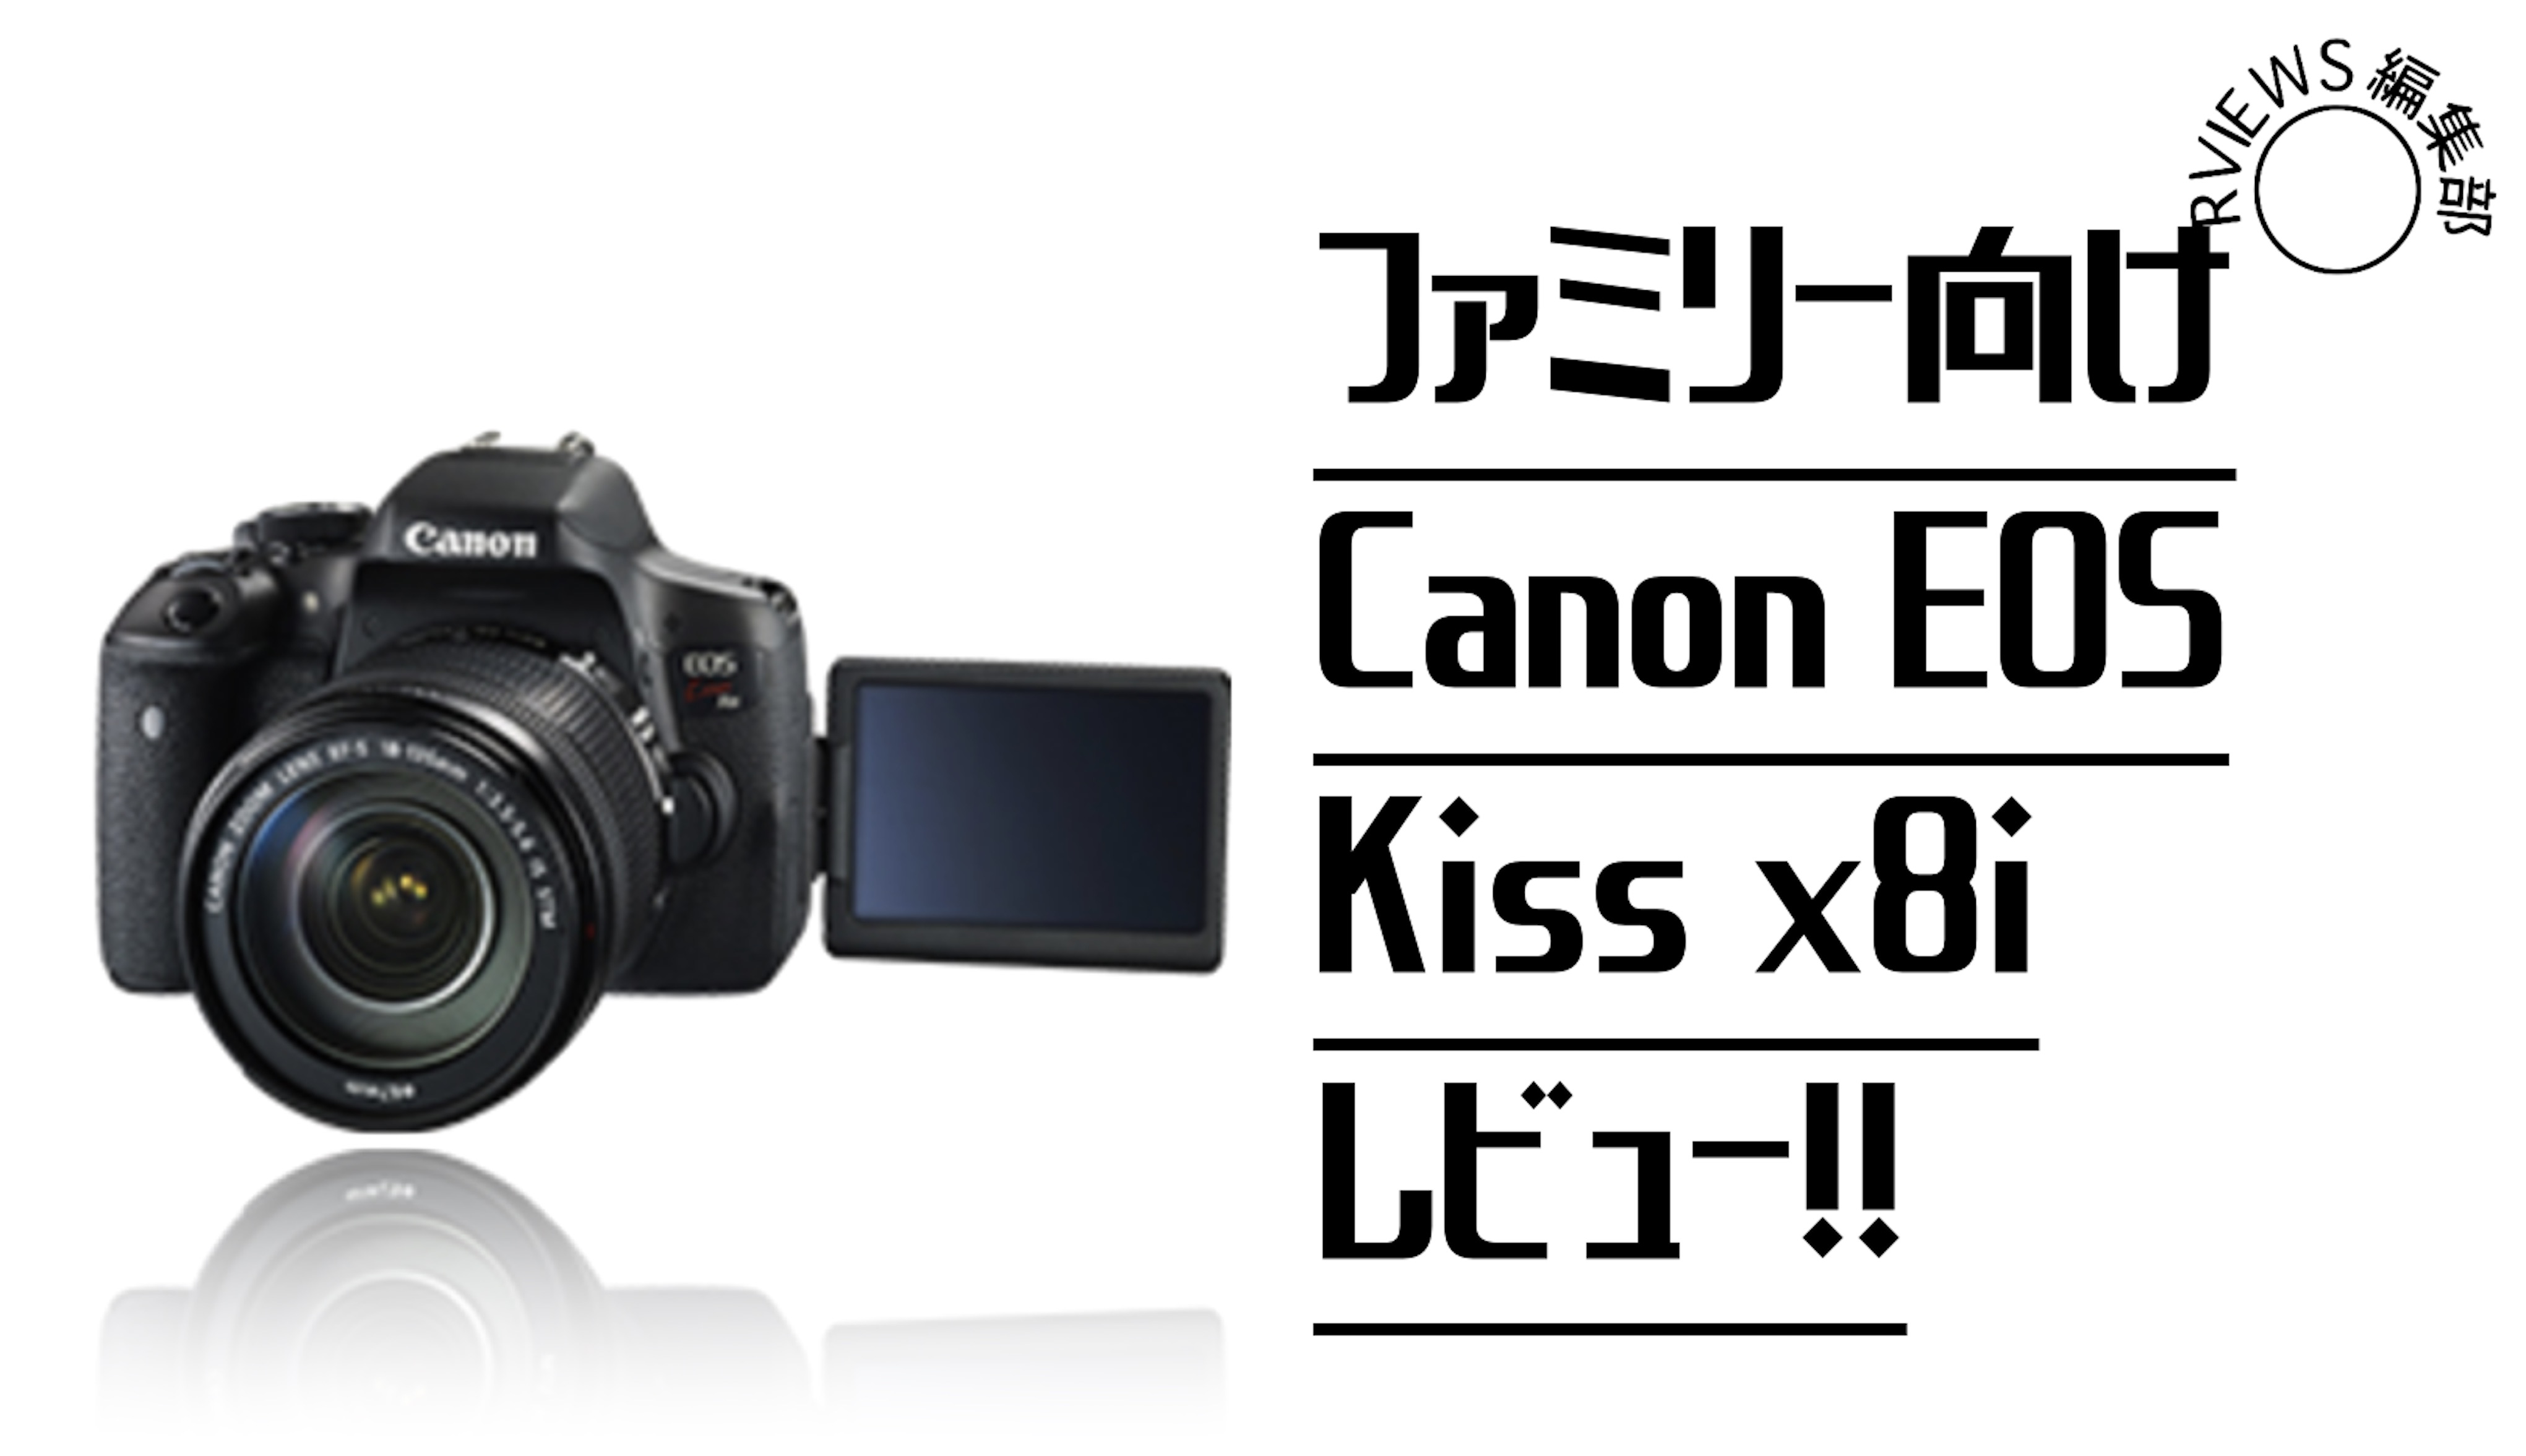 カメラ デジタルカメラ ファミリー向けエントリモデル「Canon EOS kiss x8i」をレビュー 